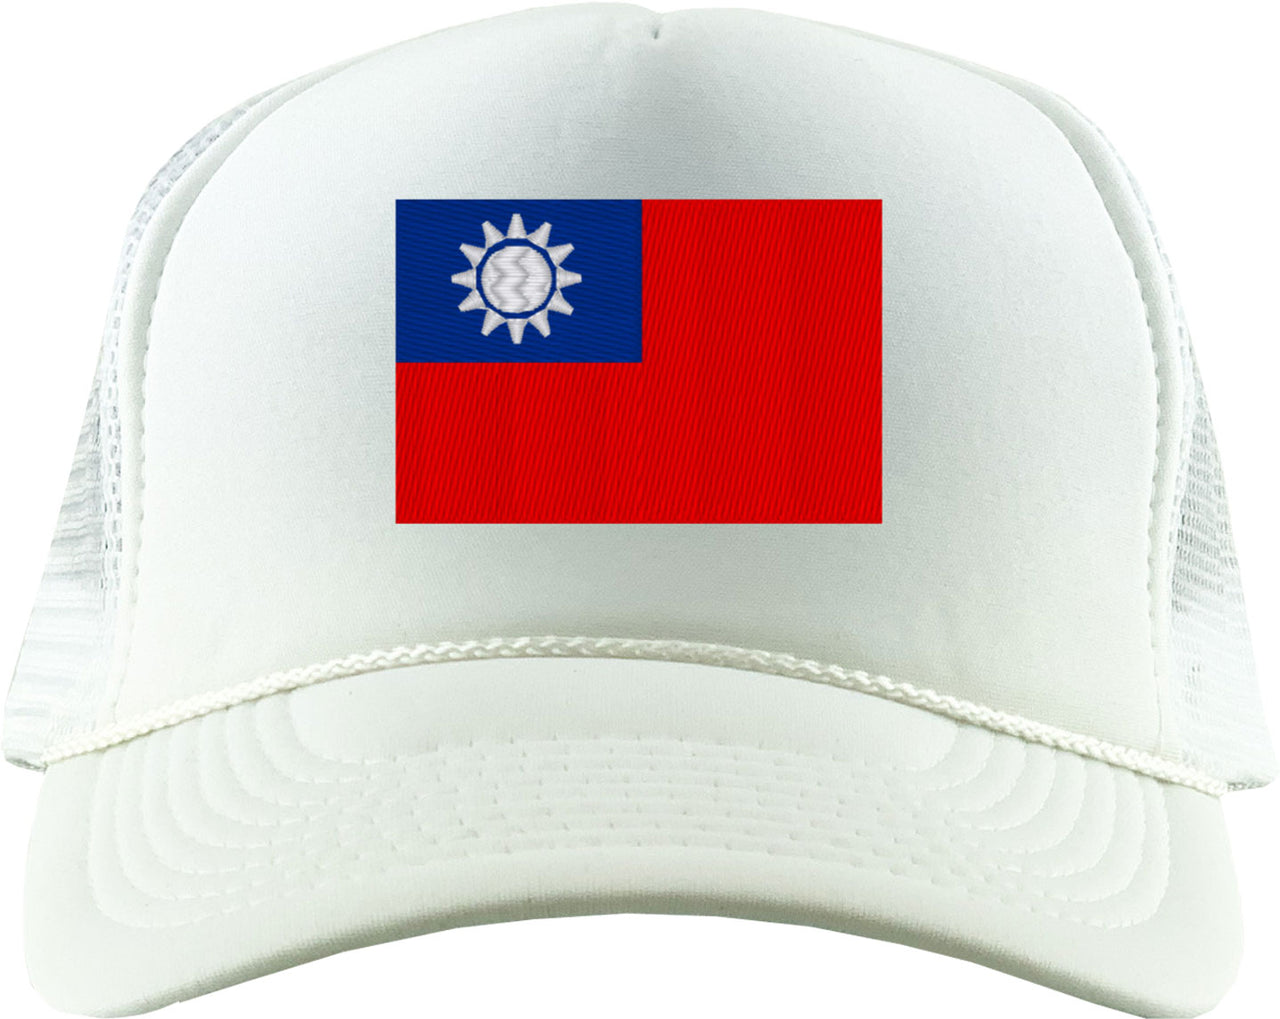 Taiwan Flag Foam Trucker Hat